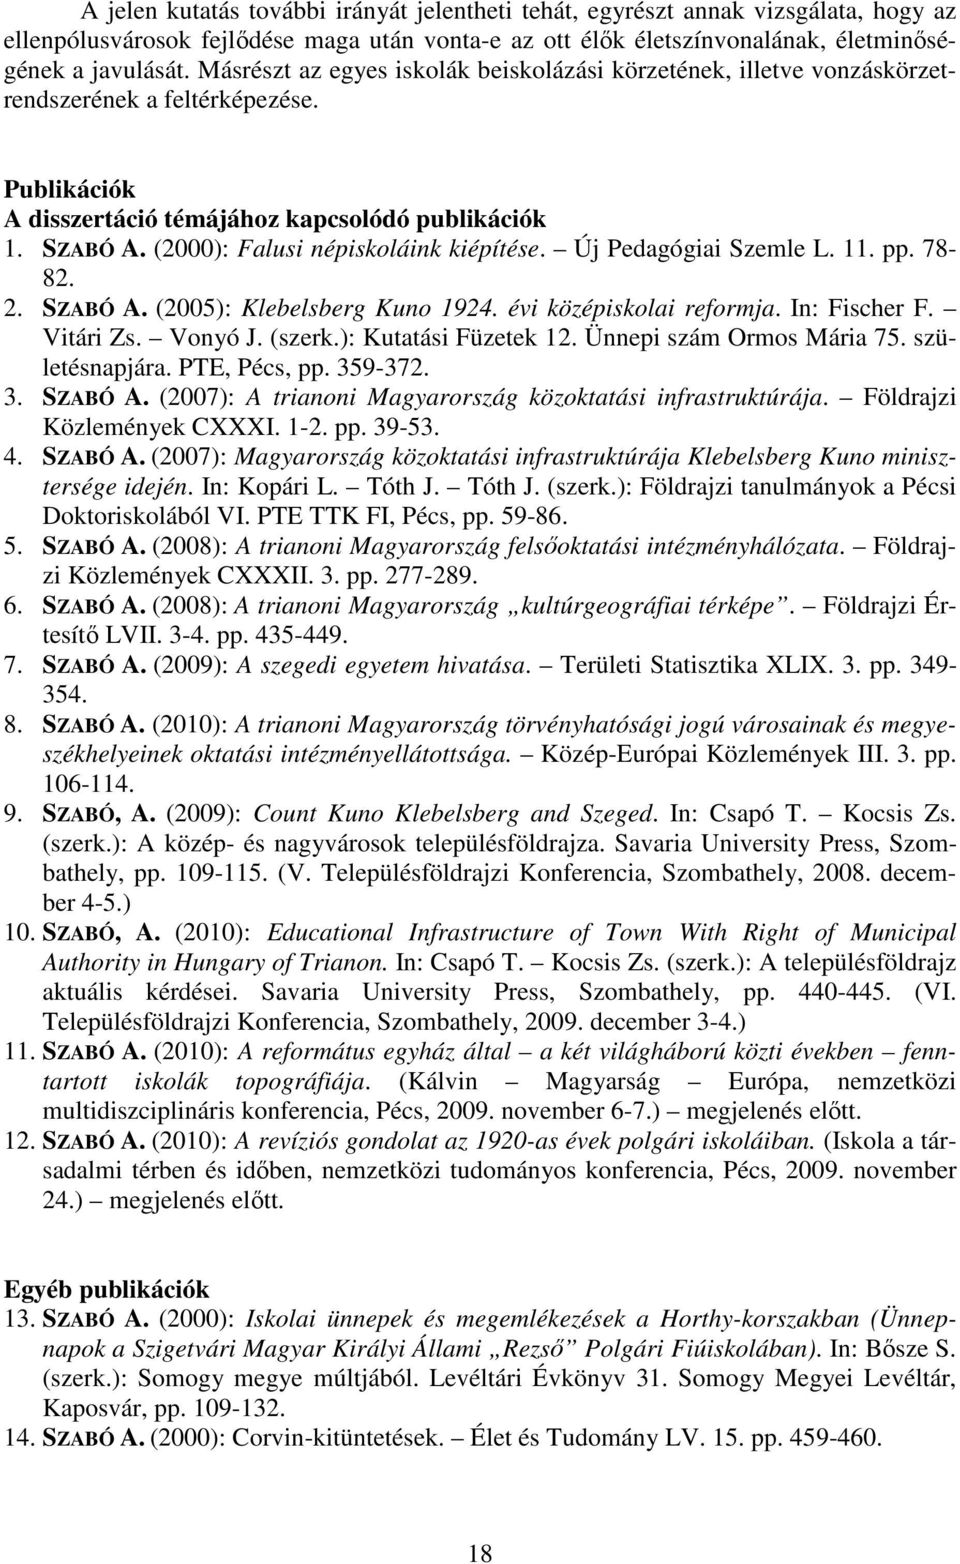 (2000): Falusi népiskoláink kiépítése. Új Pedagógiai Szemle L. 11. pp. 78-82. 2. SZABÓ A. (2005): Klebelsberg Kuno 1924. évi középiskolai reformja. In: Fischer F. Vitári Zs. Vonyó J. (szerk.